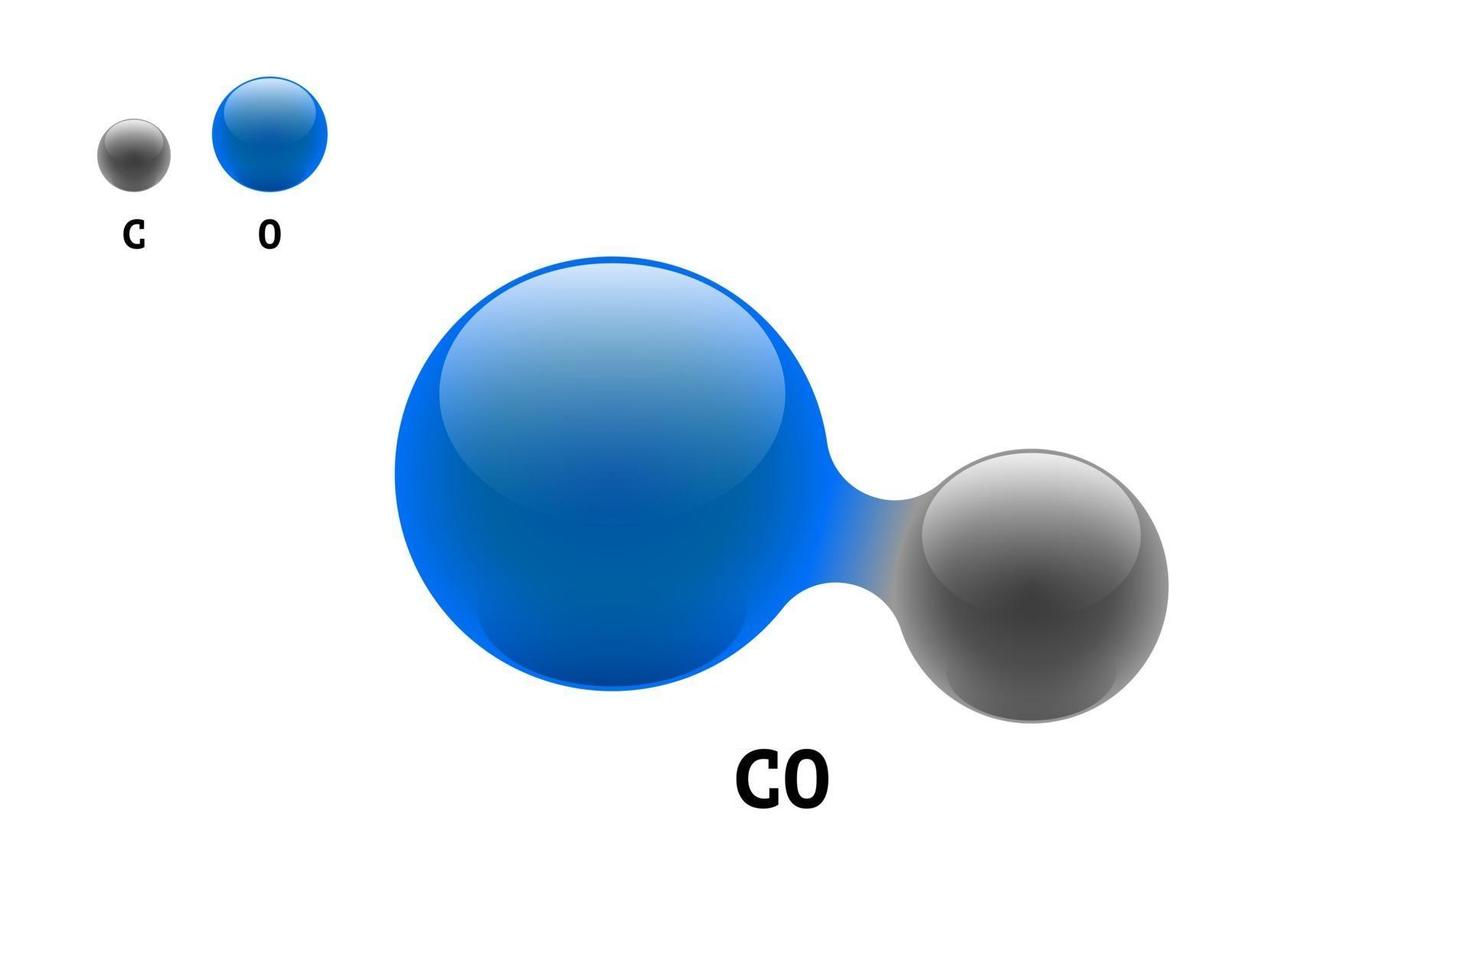 kemimodell molekyl kolmonoxid co vetenskapligt element formel. integrerade partiklar naturlig oorganisk 3d molekylär struktur bestående. två kol- och syrvolymatomvektorsfärer vektor